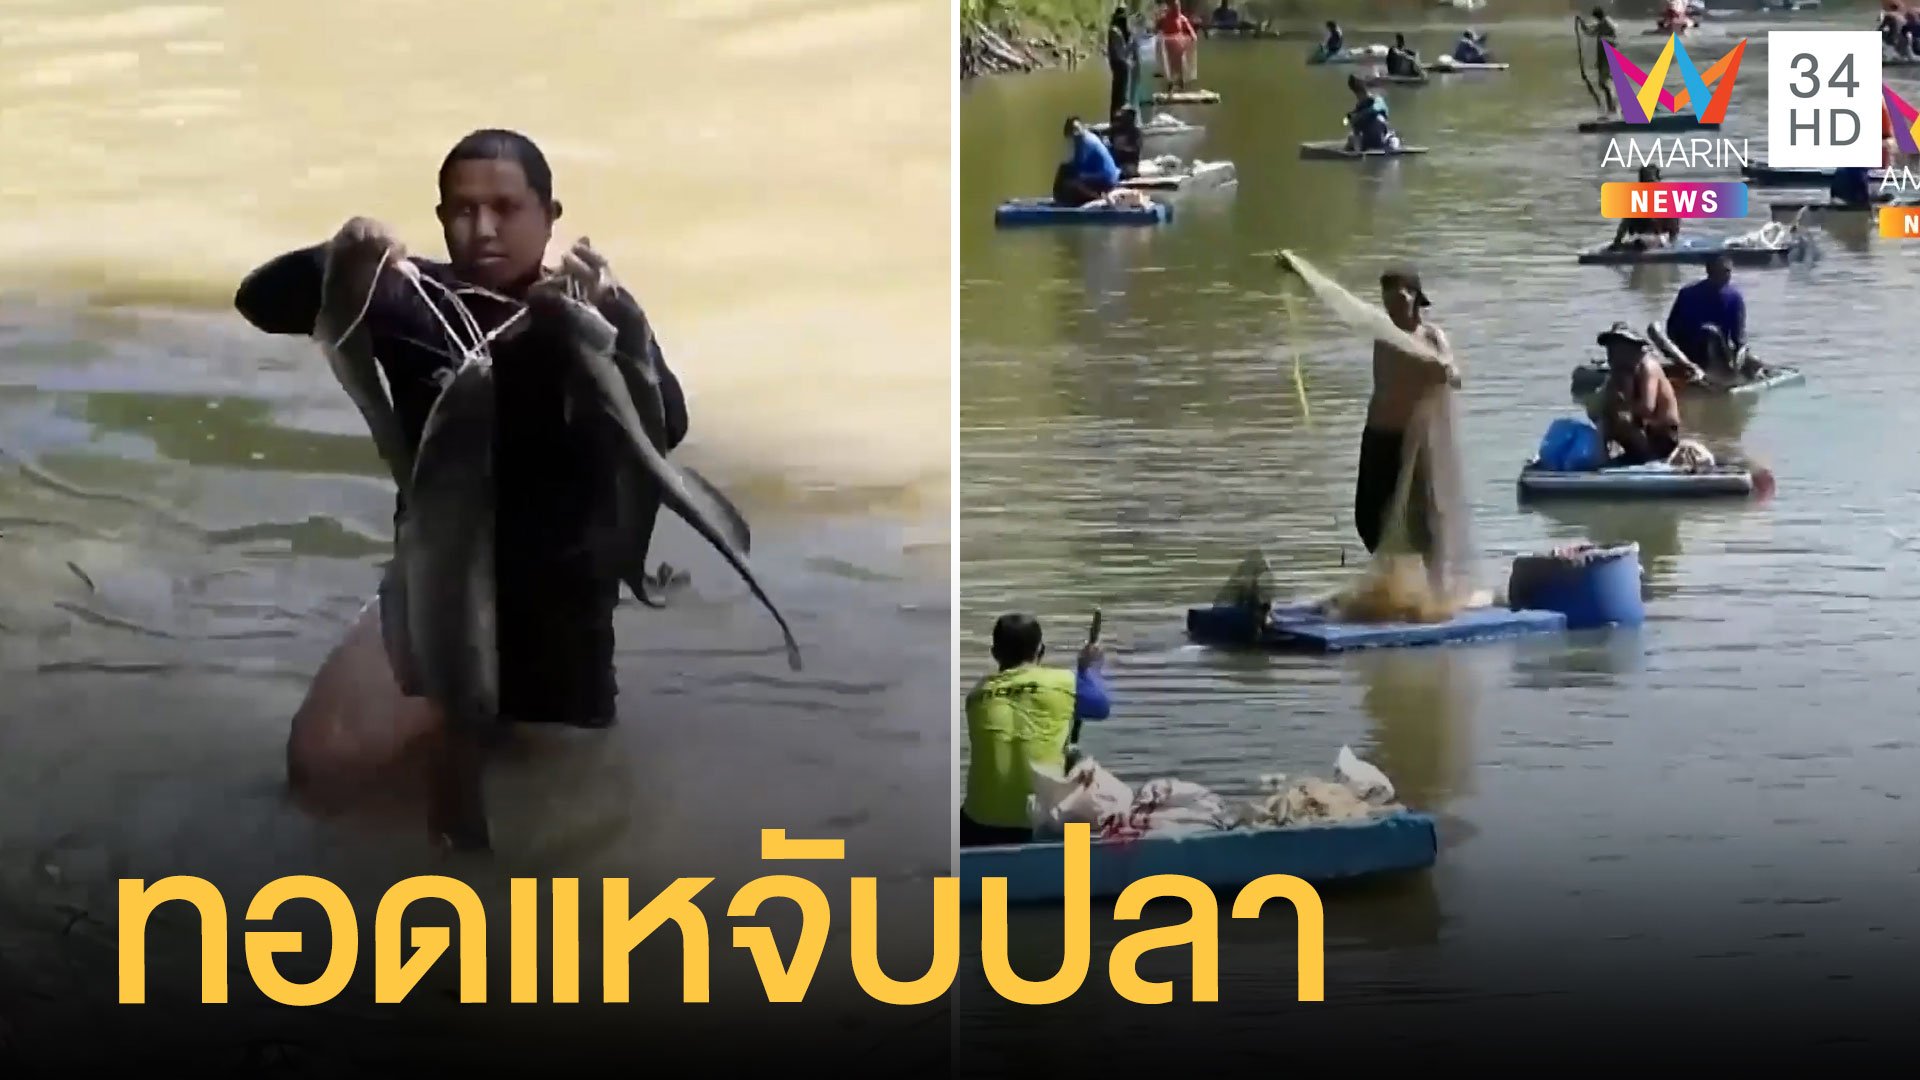 ชาวบ้านแห่ทอดแหจับปลา นำรายได้พัฒนาชุมชน | ข่าวเที่ยงอมรินทร์ | 24 พ.ค. 65 | AMARIN TVHD34